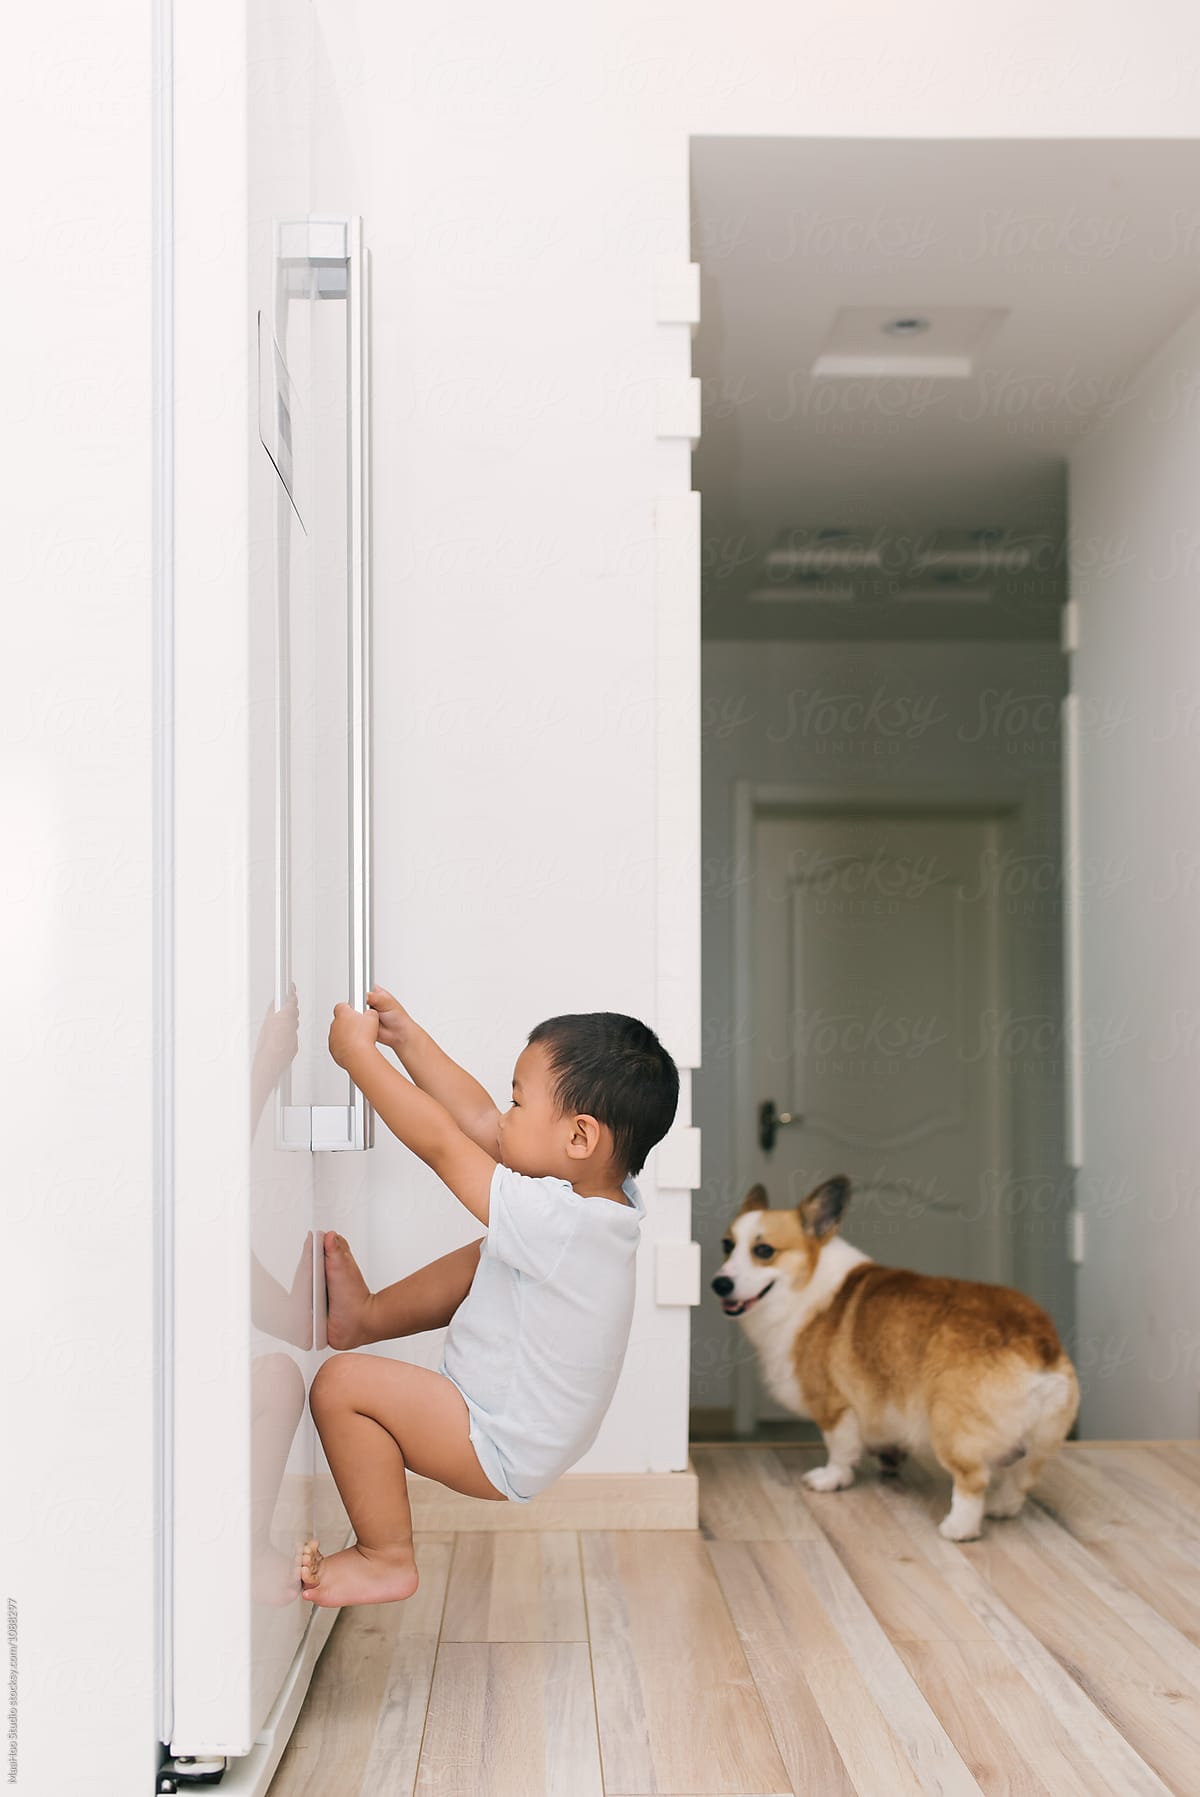 Toddler boy hanging on the door of fridge